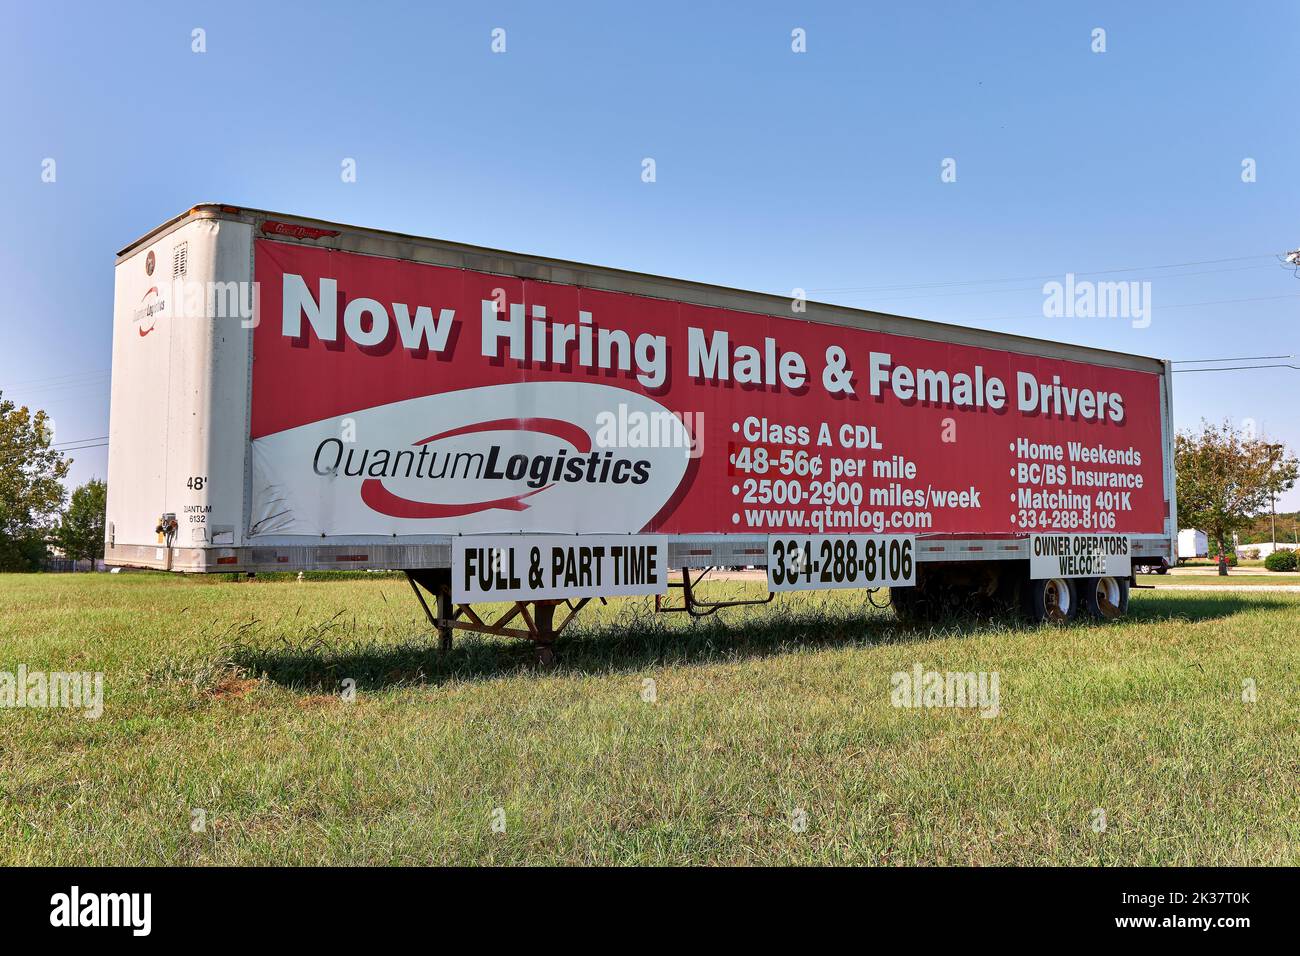 Grande que ahora los conductores de camiones de alquiler firman la publicidad para los conductores de camiones hombres y mujeres en Montgomery Alabama, EE.UU.. Foto de stock